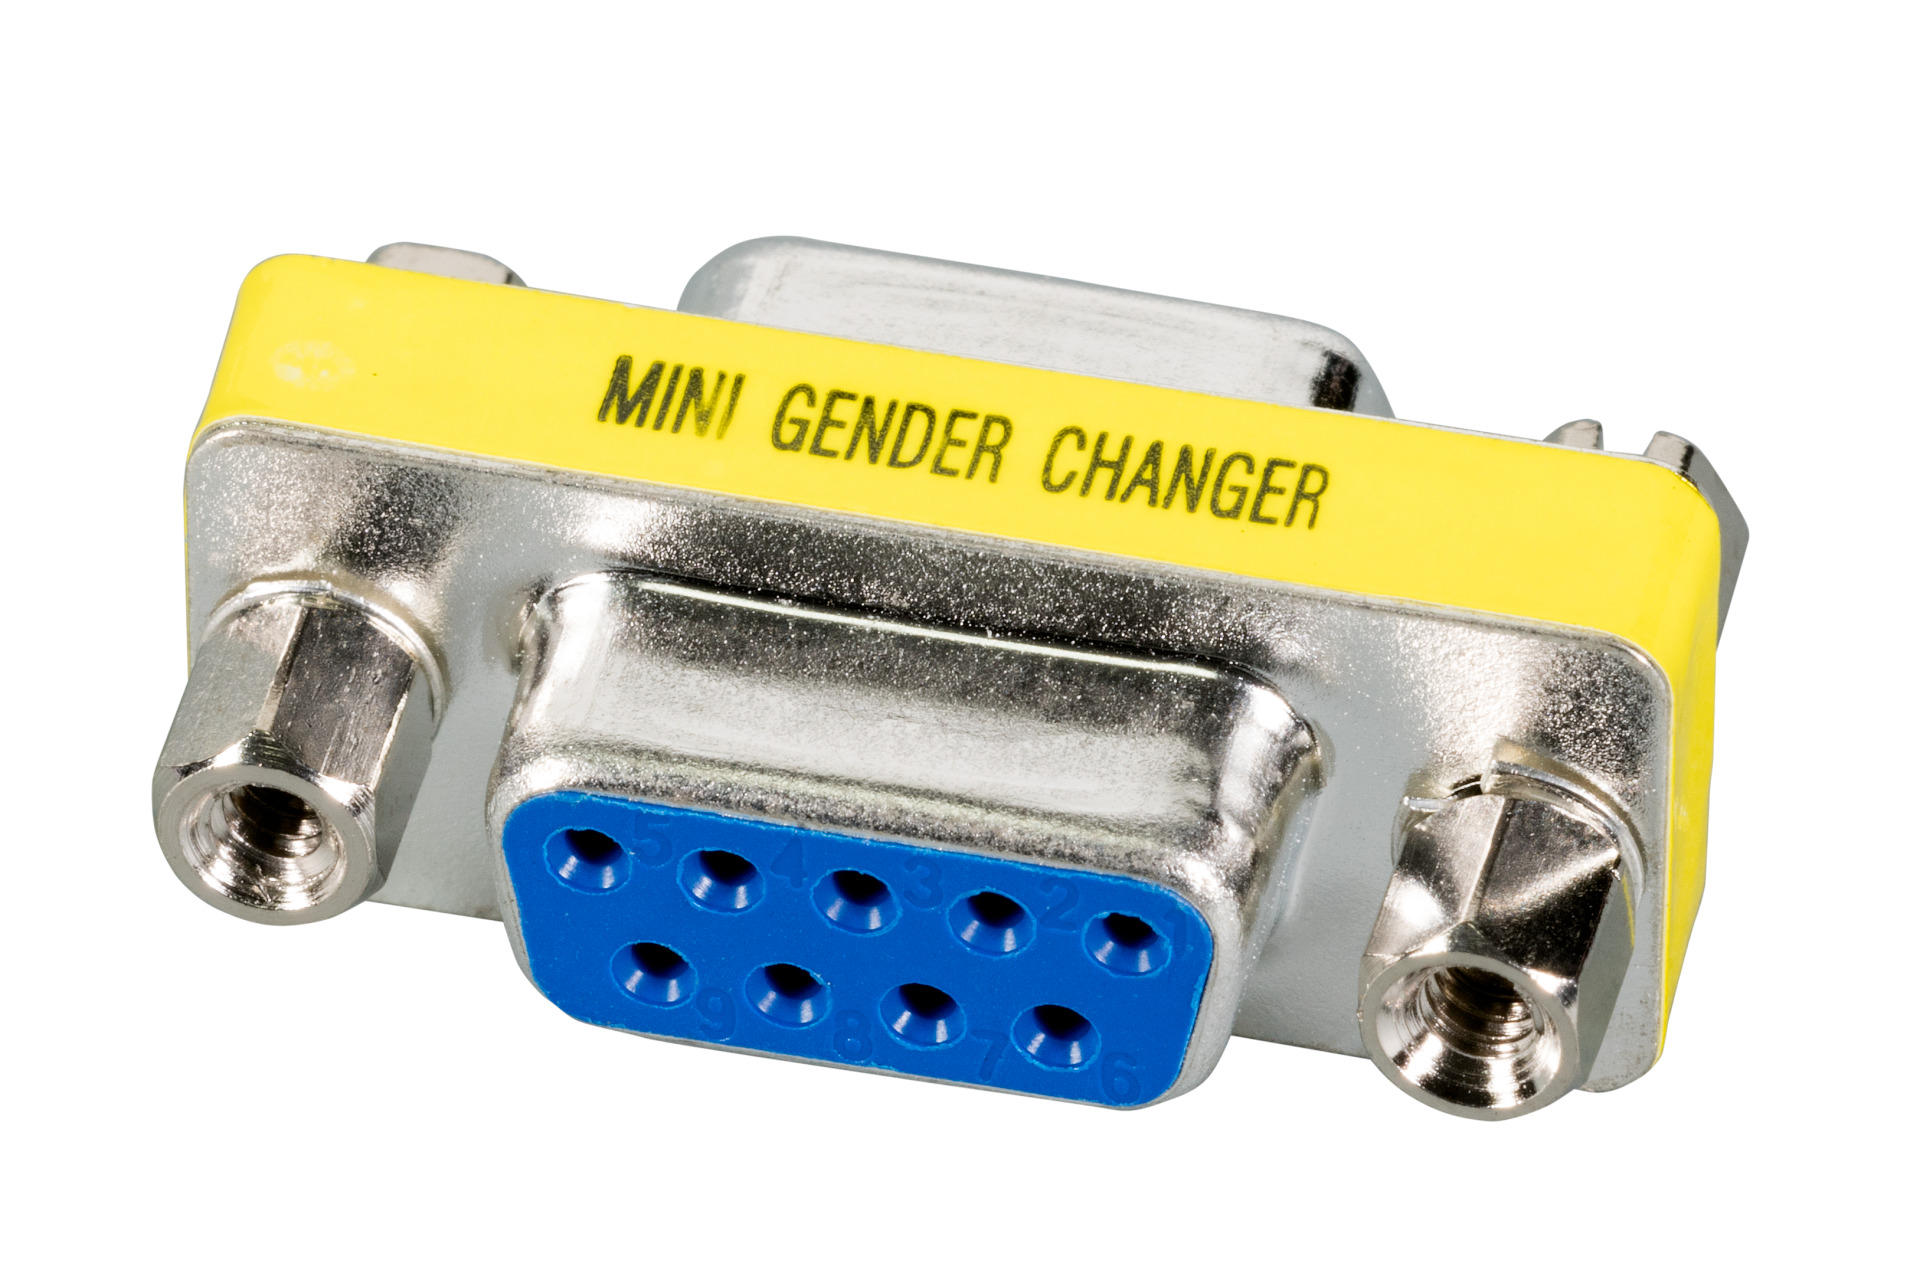 Mini Gender Changer, DSub 9, F-F